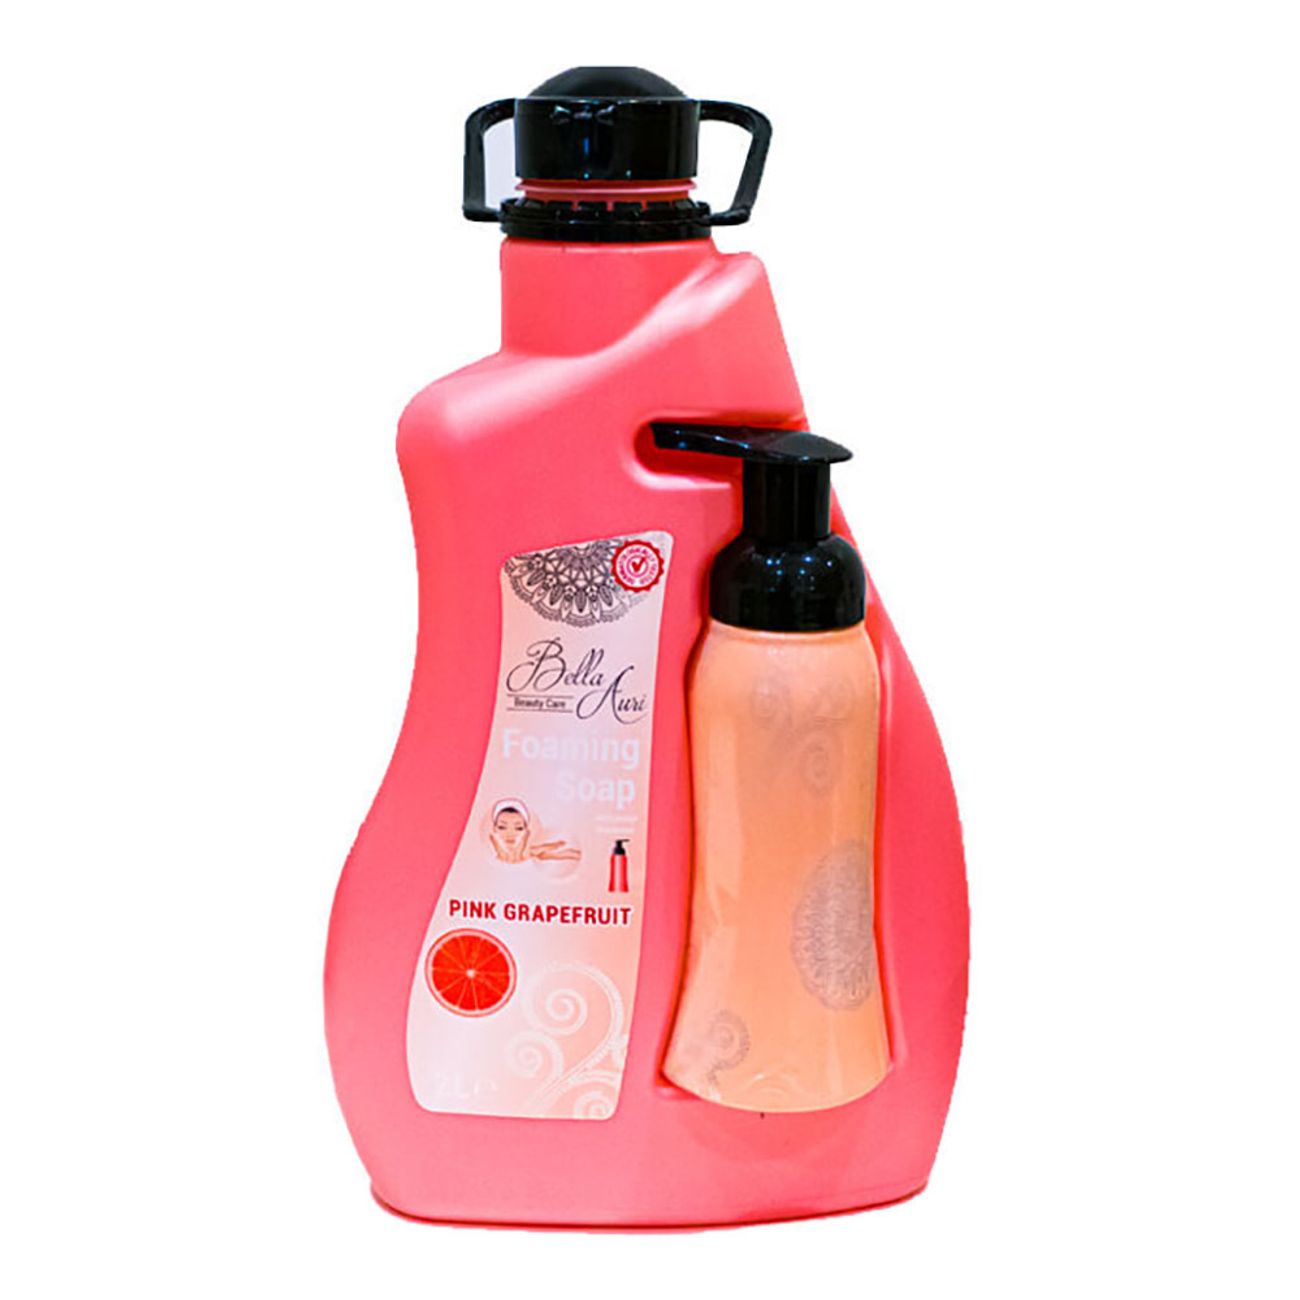 foaming-soap-pink-grapefruit-80849-1